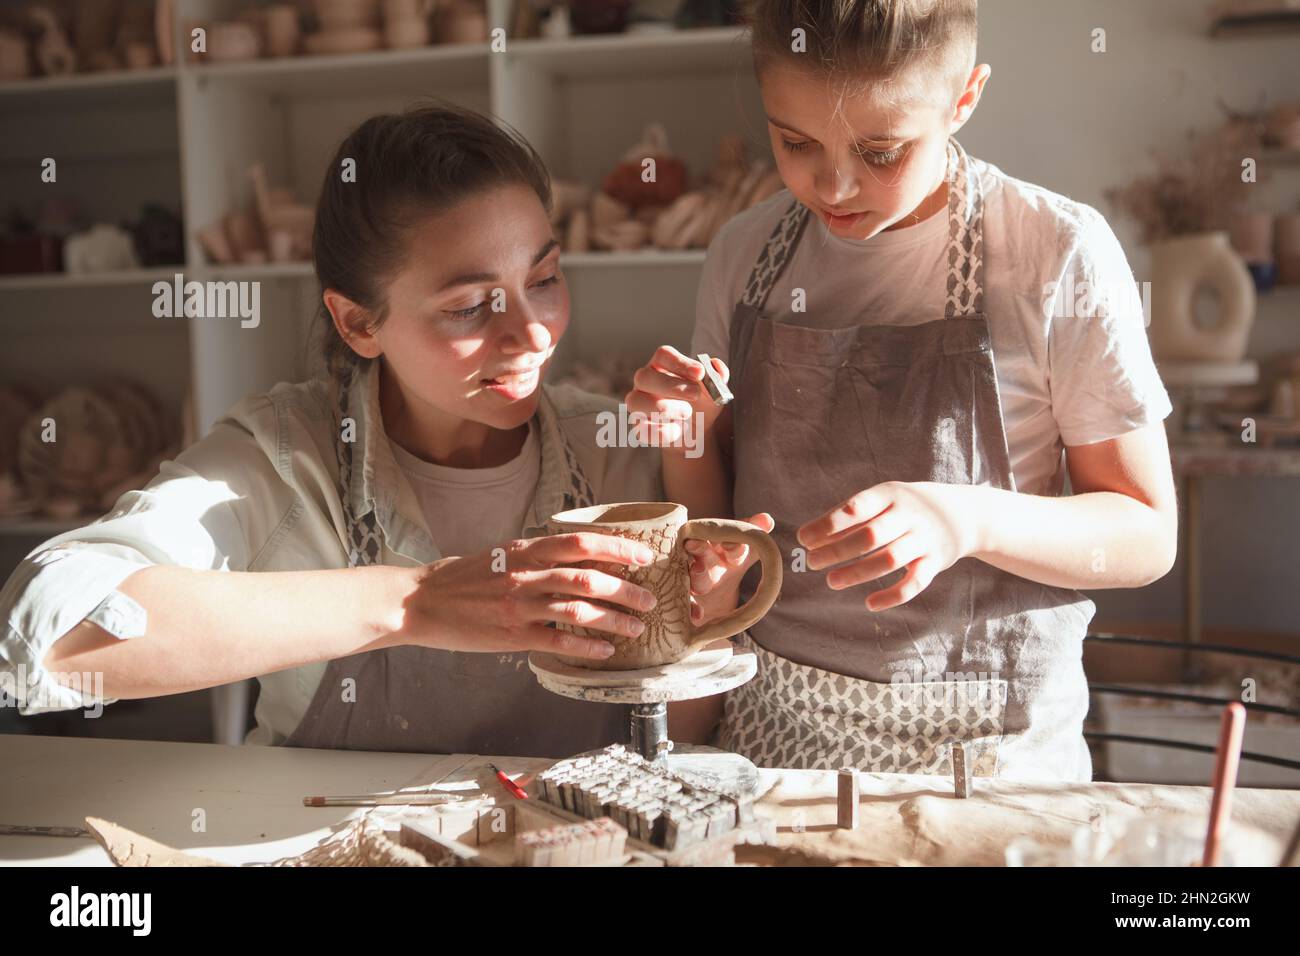 Der junge Junge und seine Mutter dekorieren handgemachtes Geschirr in der Kunstwerkstatt Stockfoto